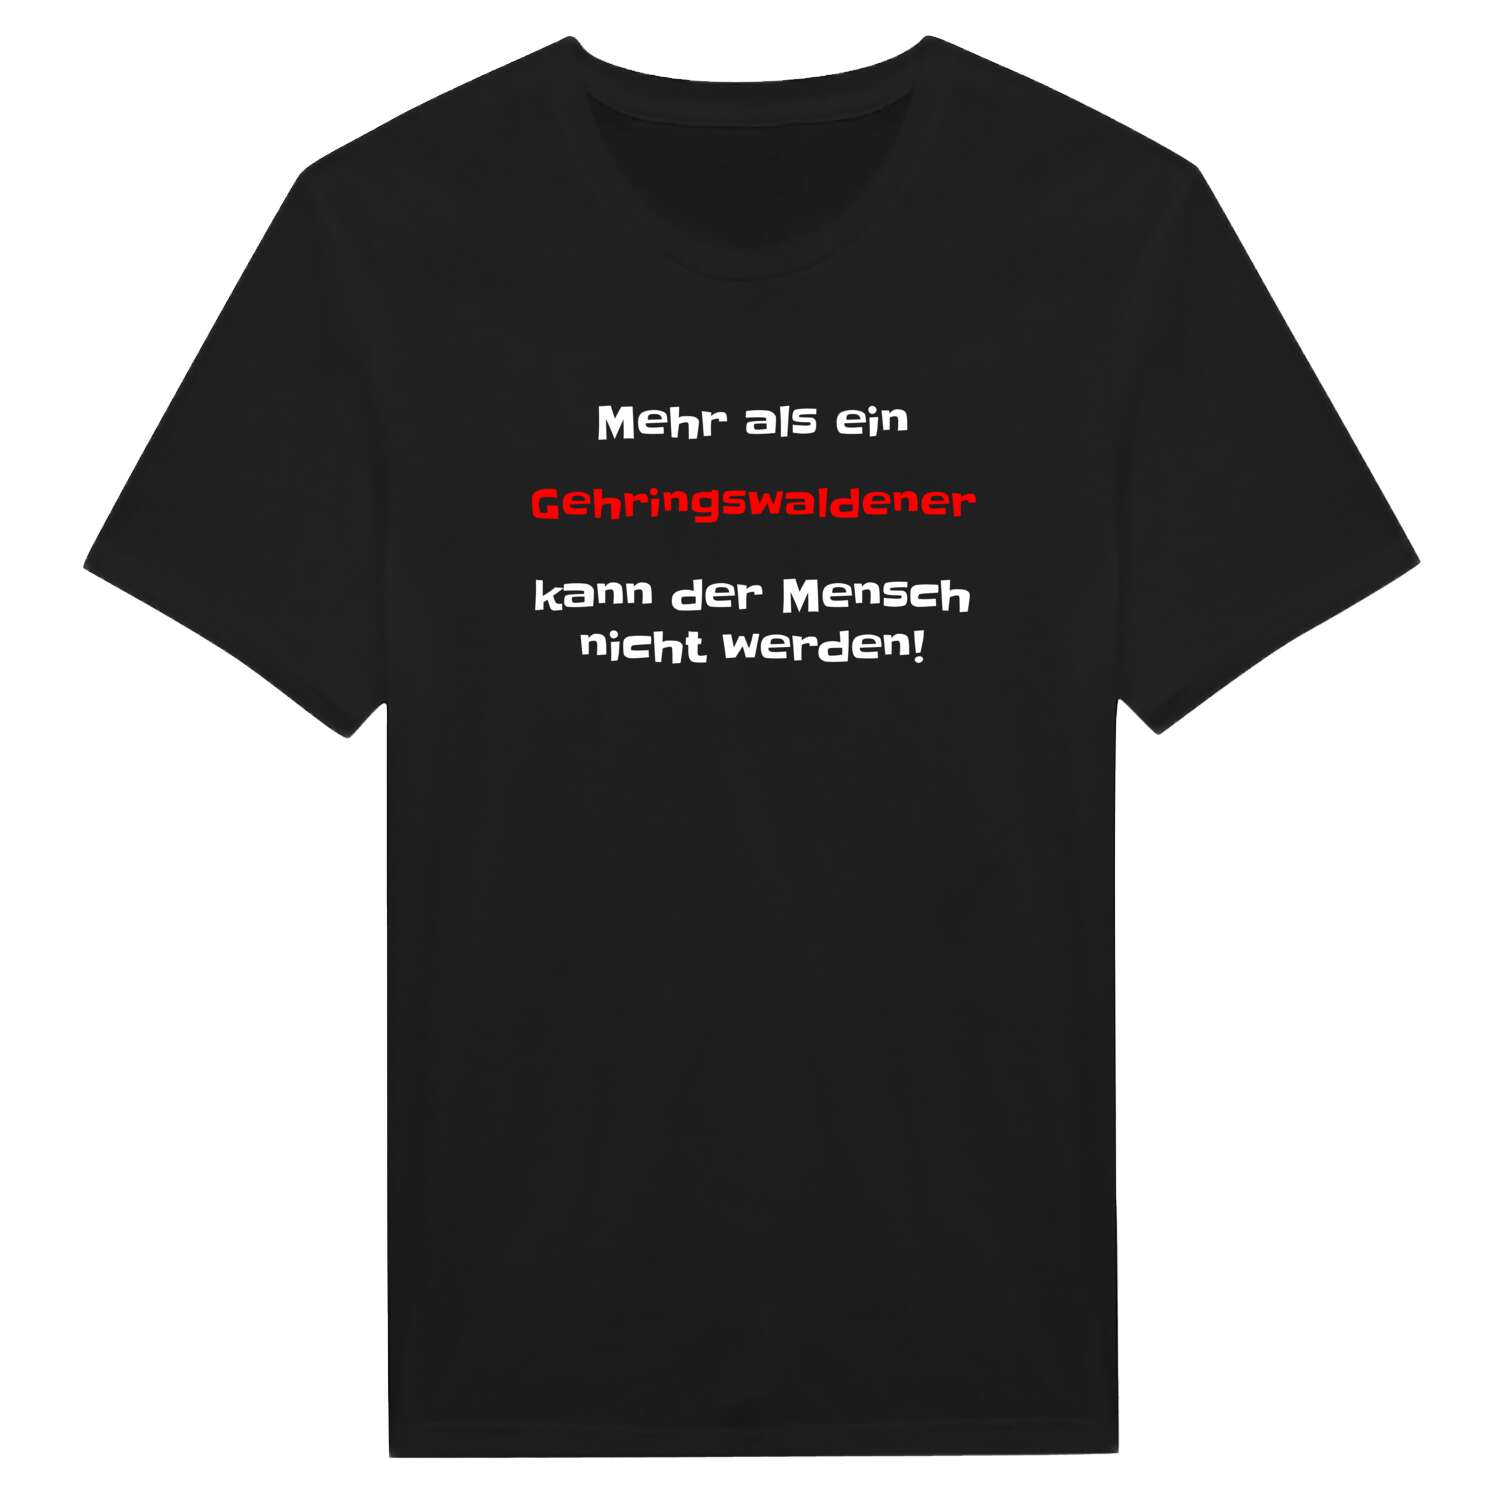 Gehringswalde T-Shirt »Mehr als ein«